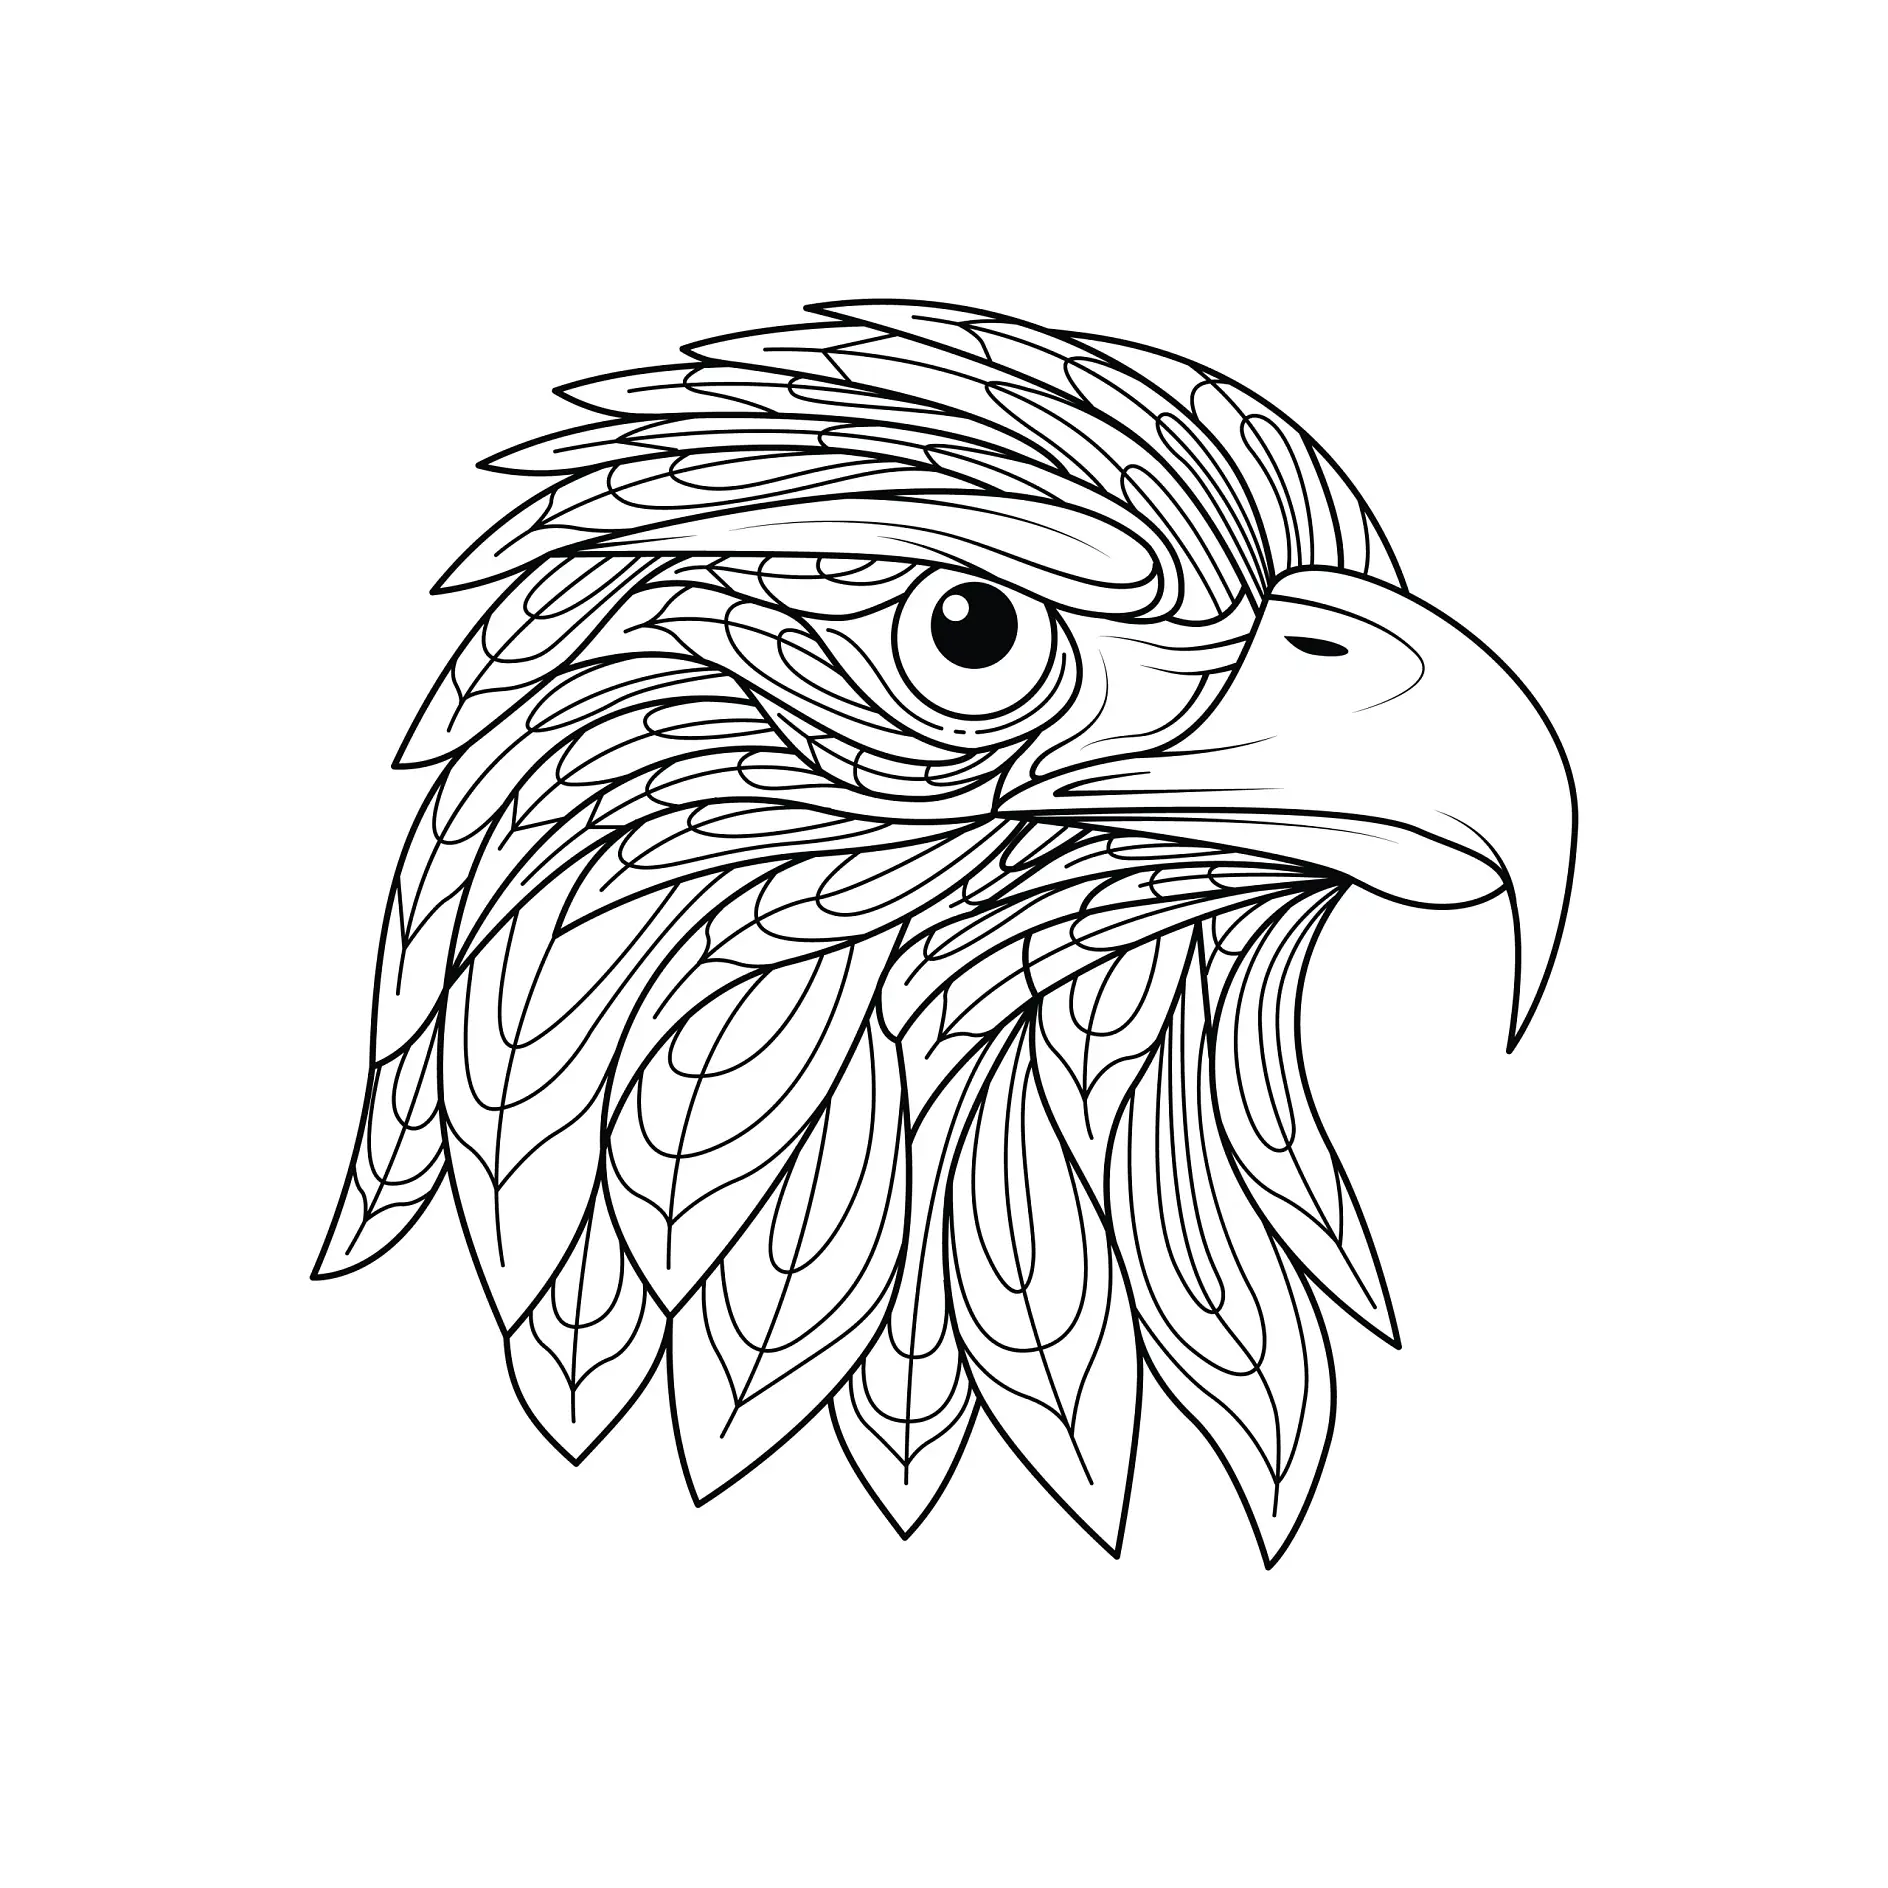 Ausmalbild Adlerkopf mit kunstvollen, detaillierten Federn und aufmerksamem Blick